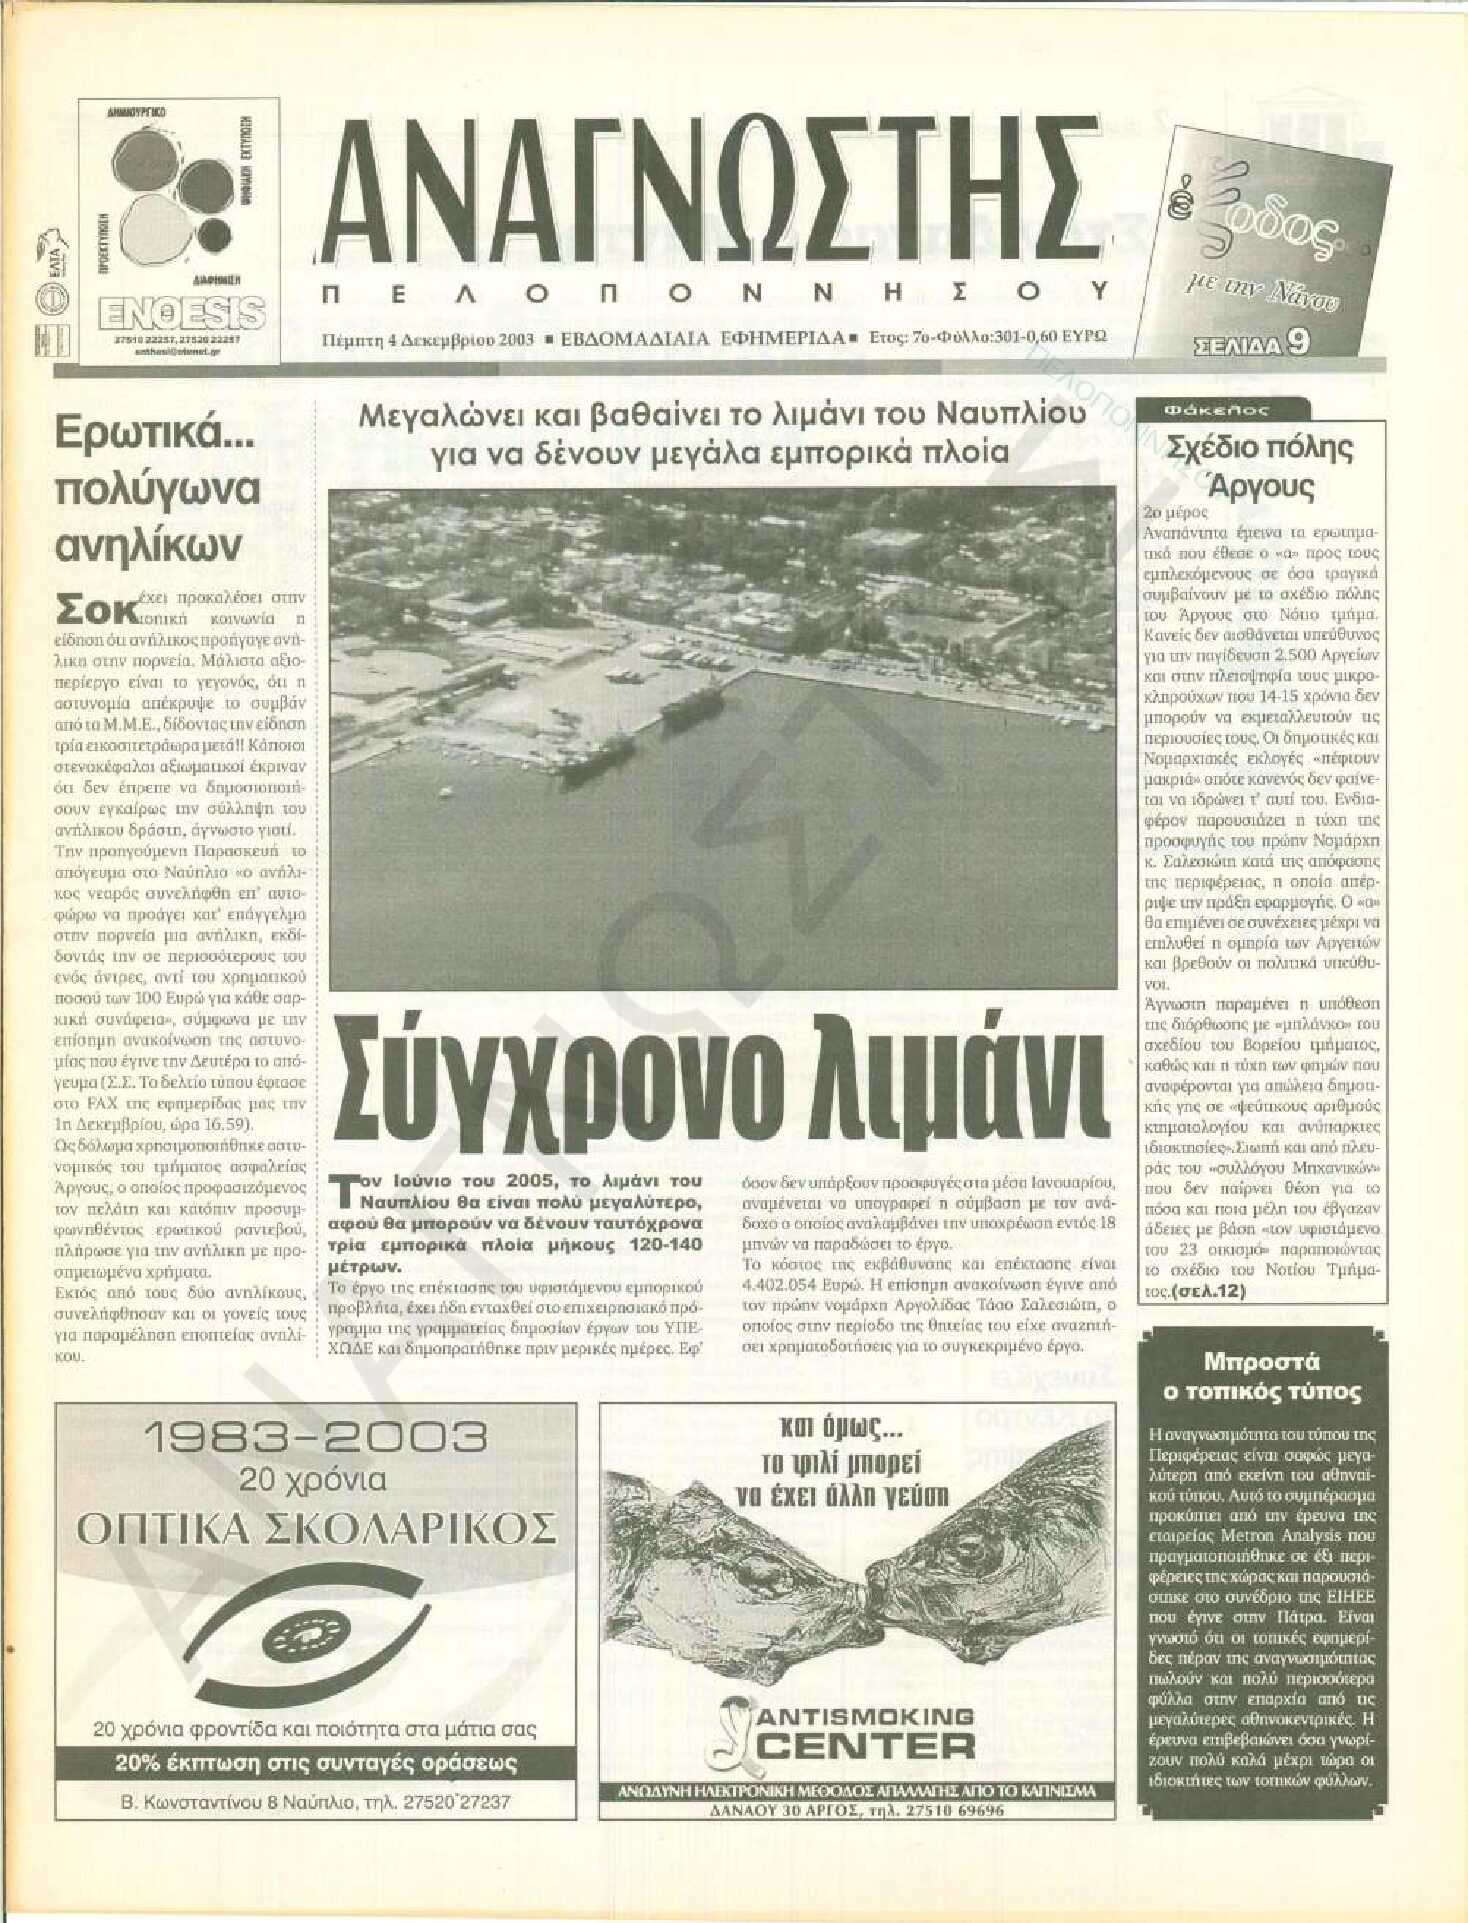 Έντυπος Αναγνώστης Πελοποννήσου Τεύχος 301